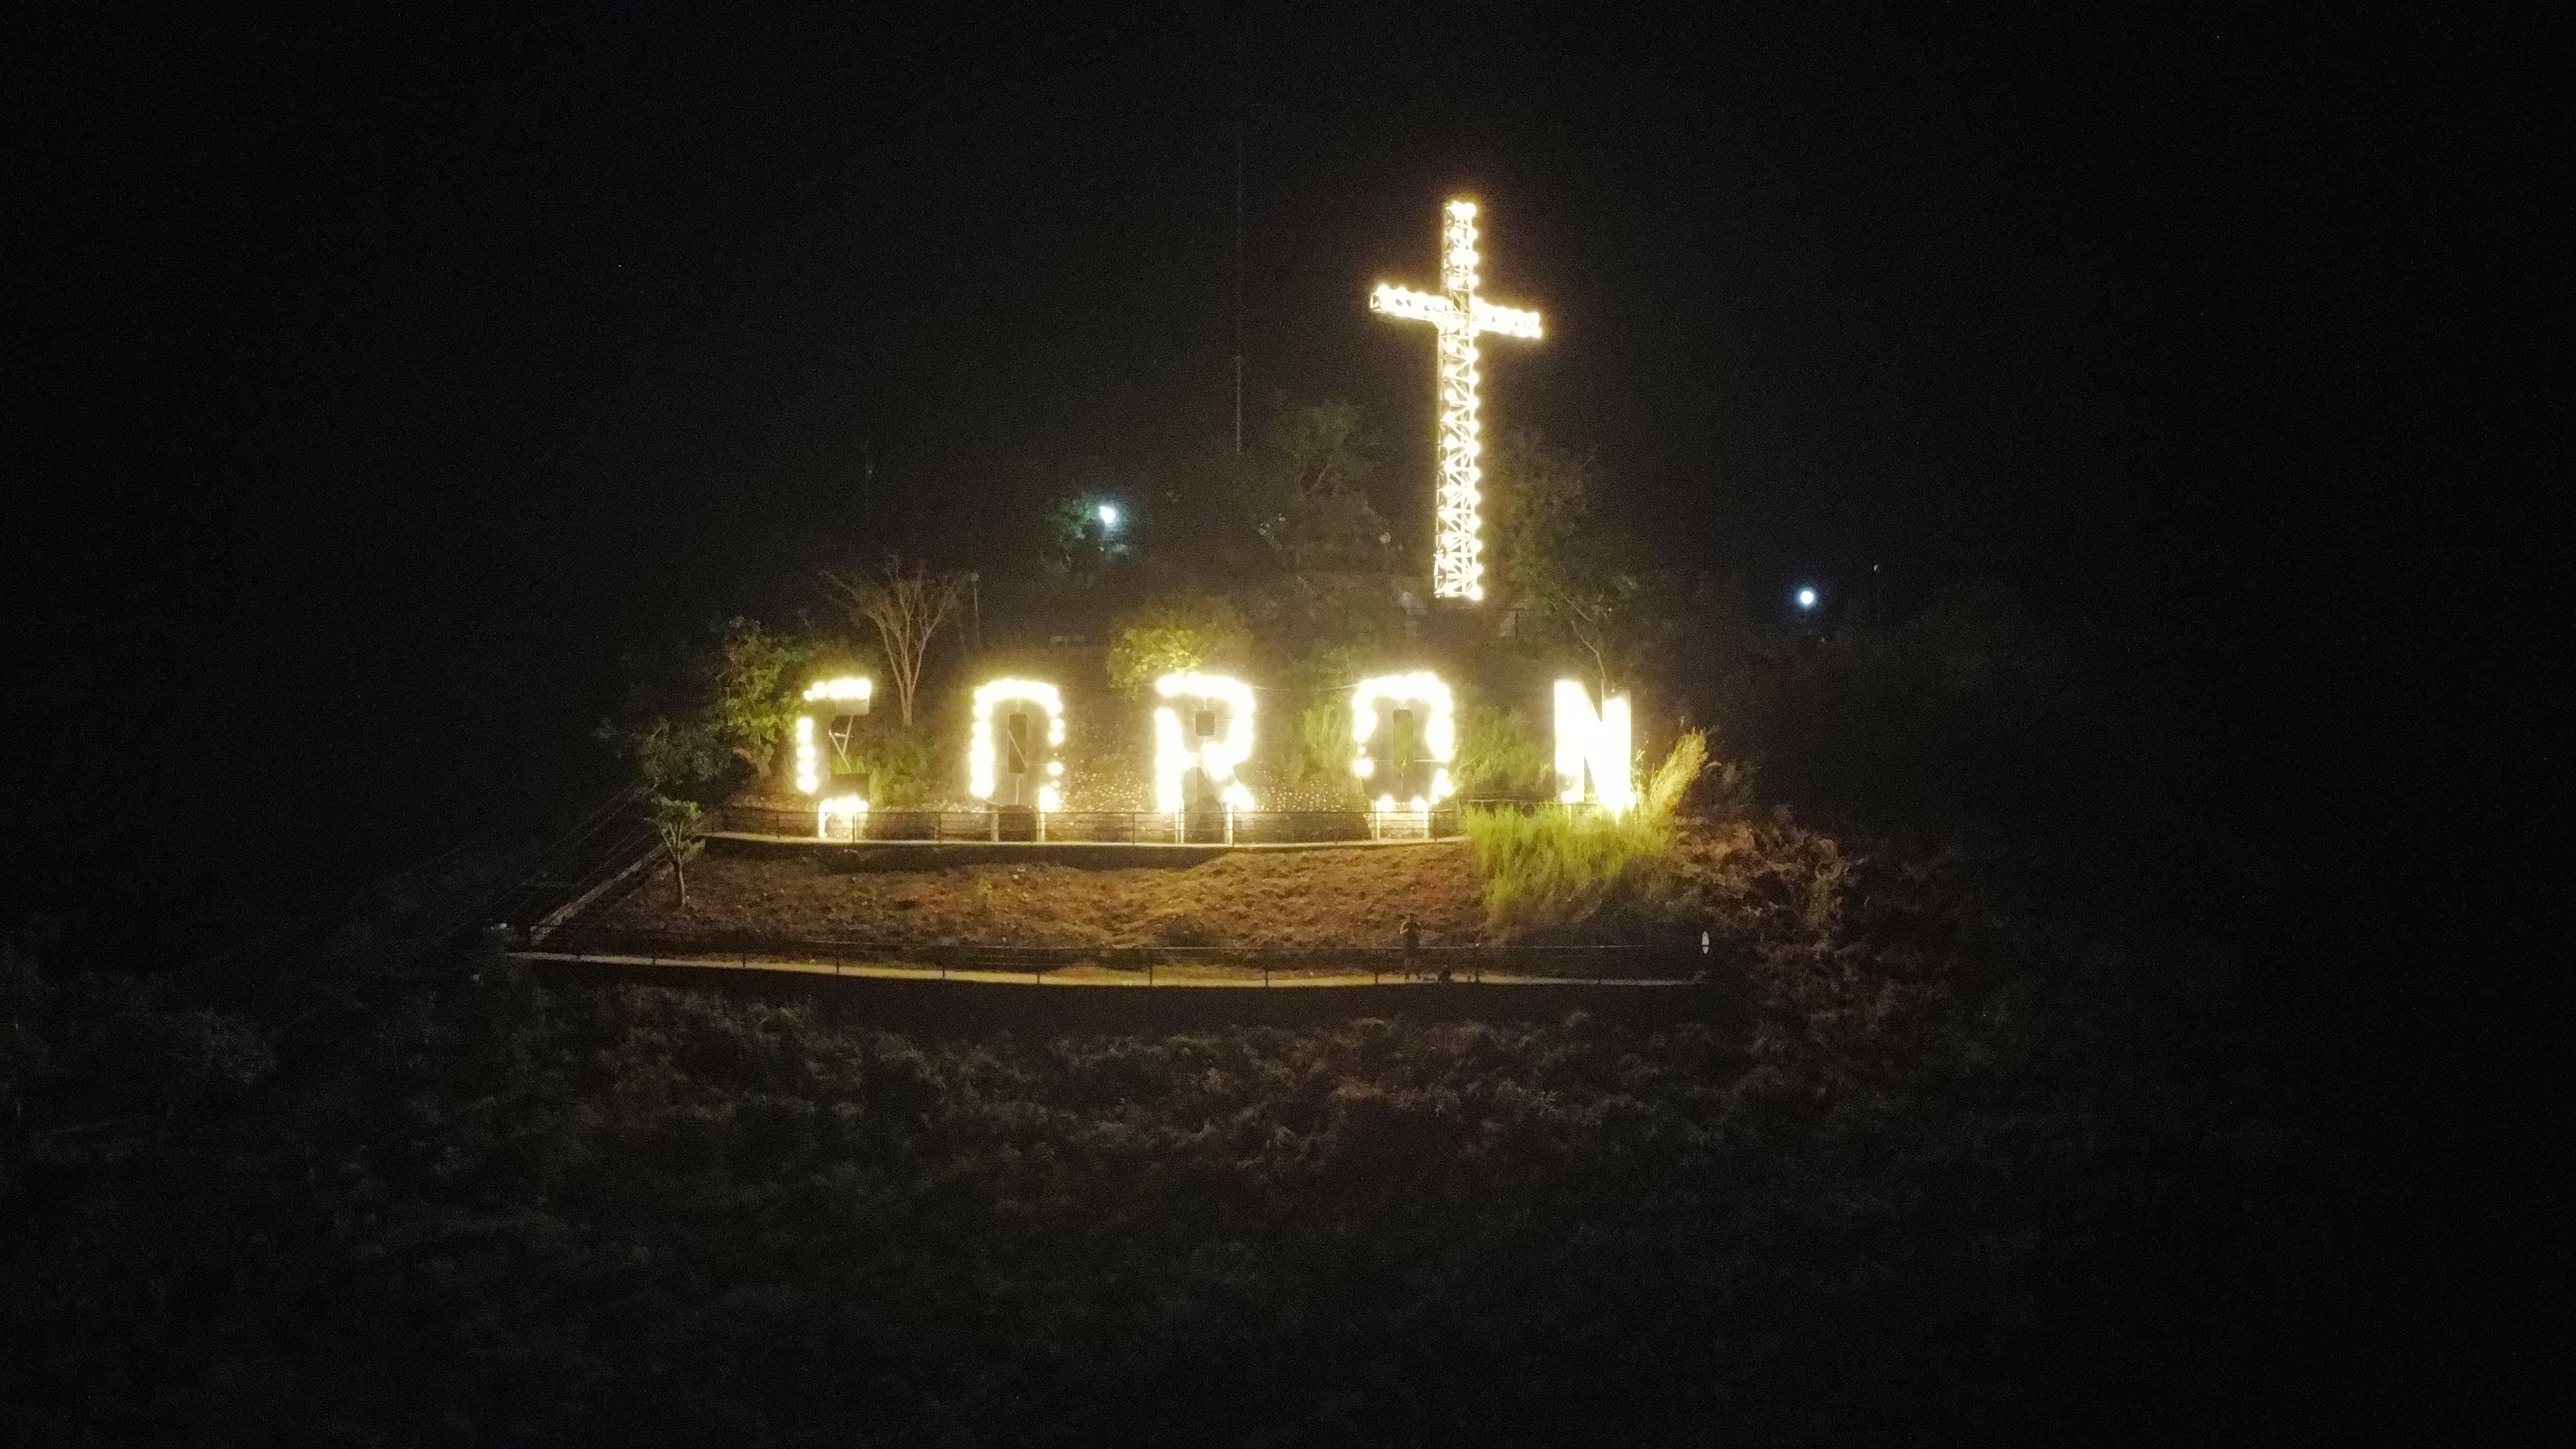 Coron sign on Mount Taypas